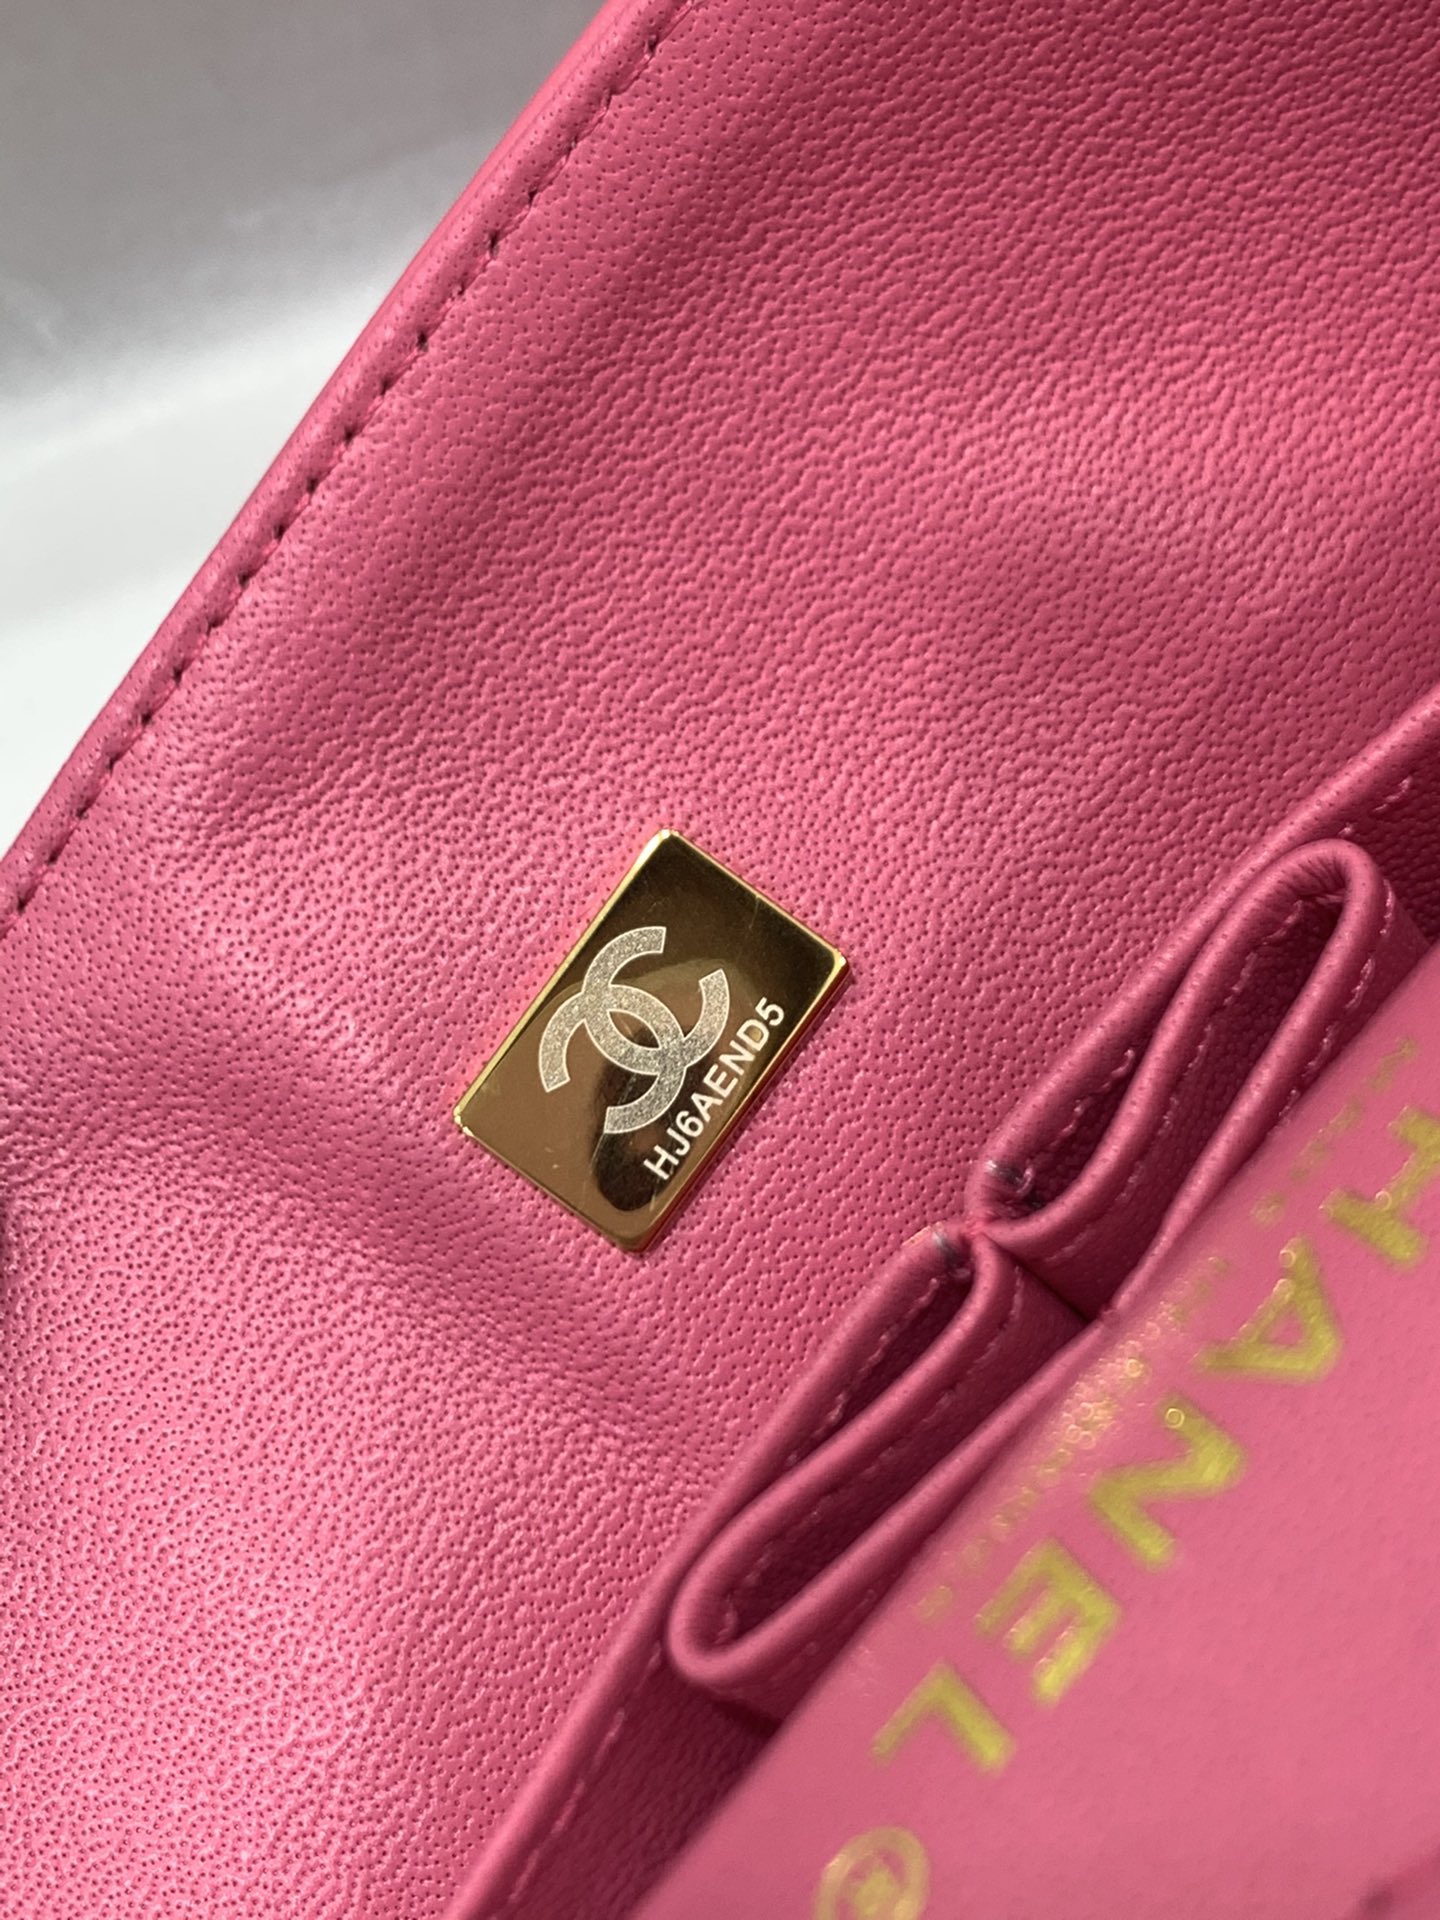 现货  【真品级】Chanel CF 23cm  原厂bodin joyeux 羔羊皮  经典永远百搭 粉色 浅金扣